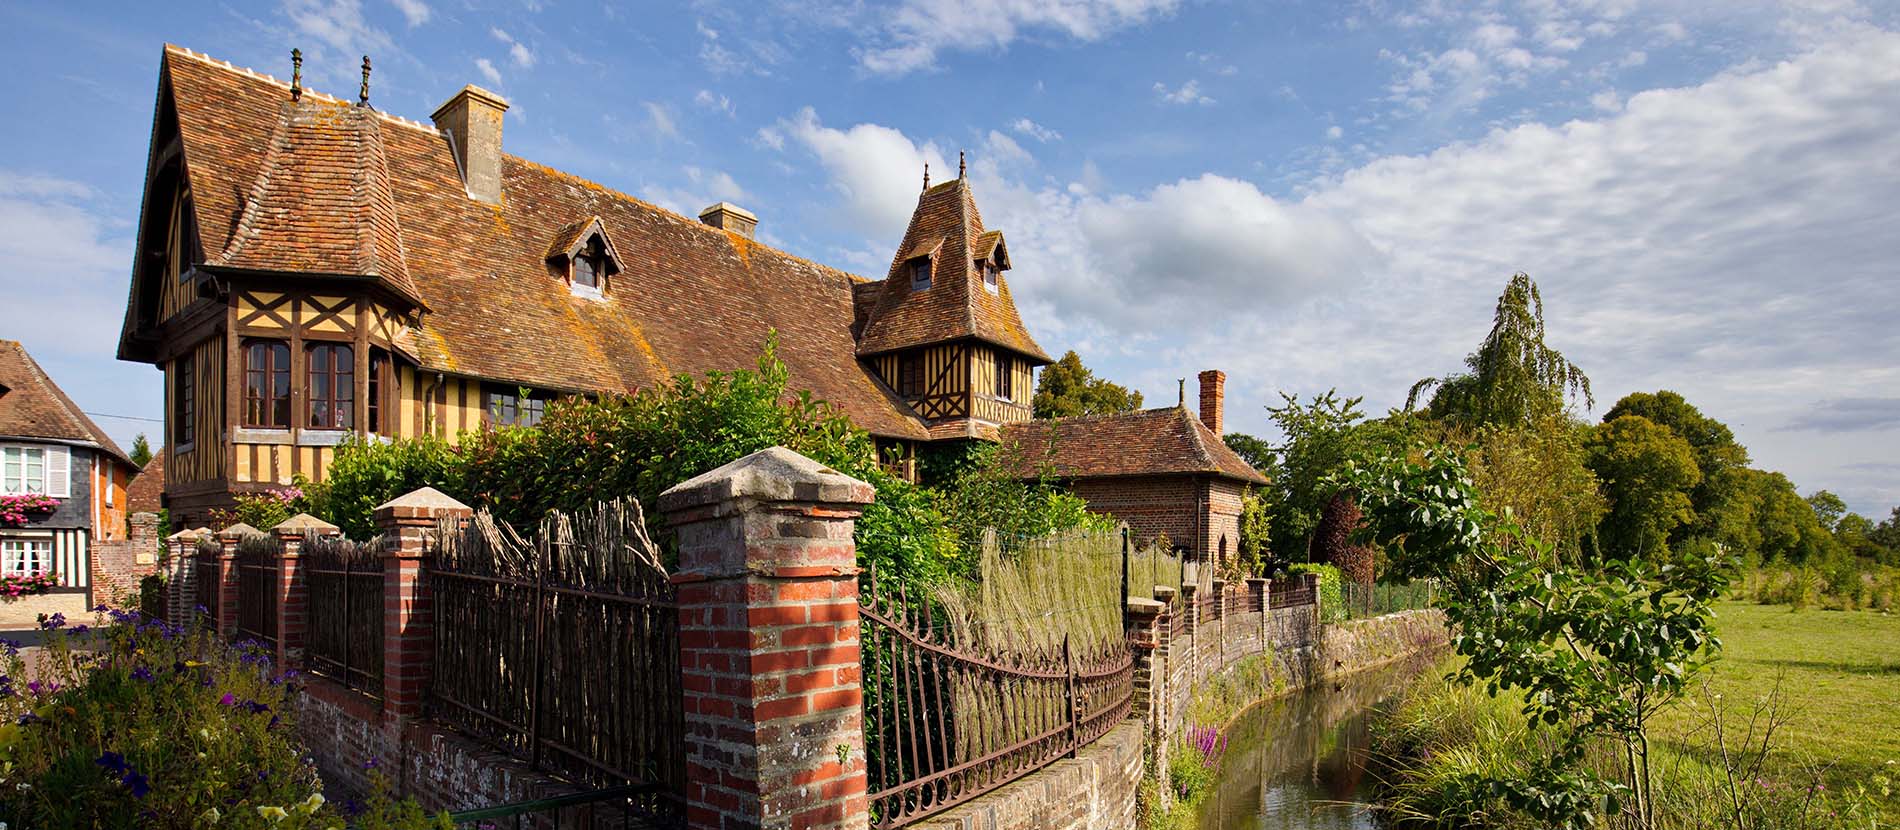 Maison en colombages typiquement normande dans le village de Beuvron-en-auge dans le Calvados